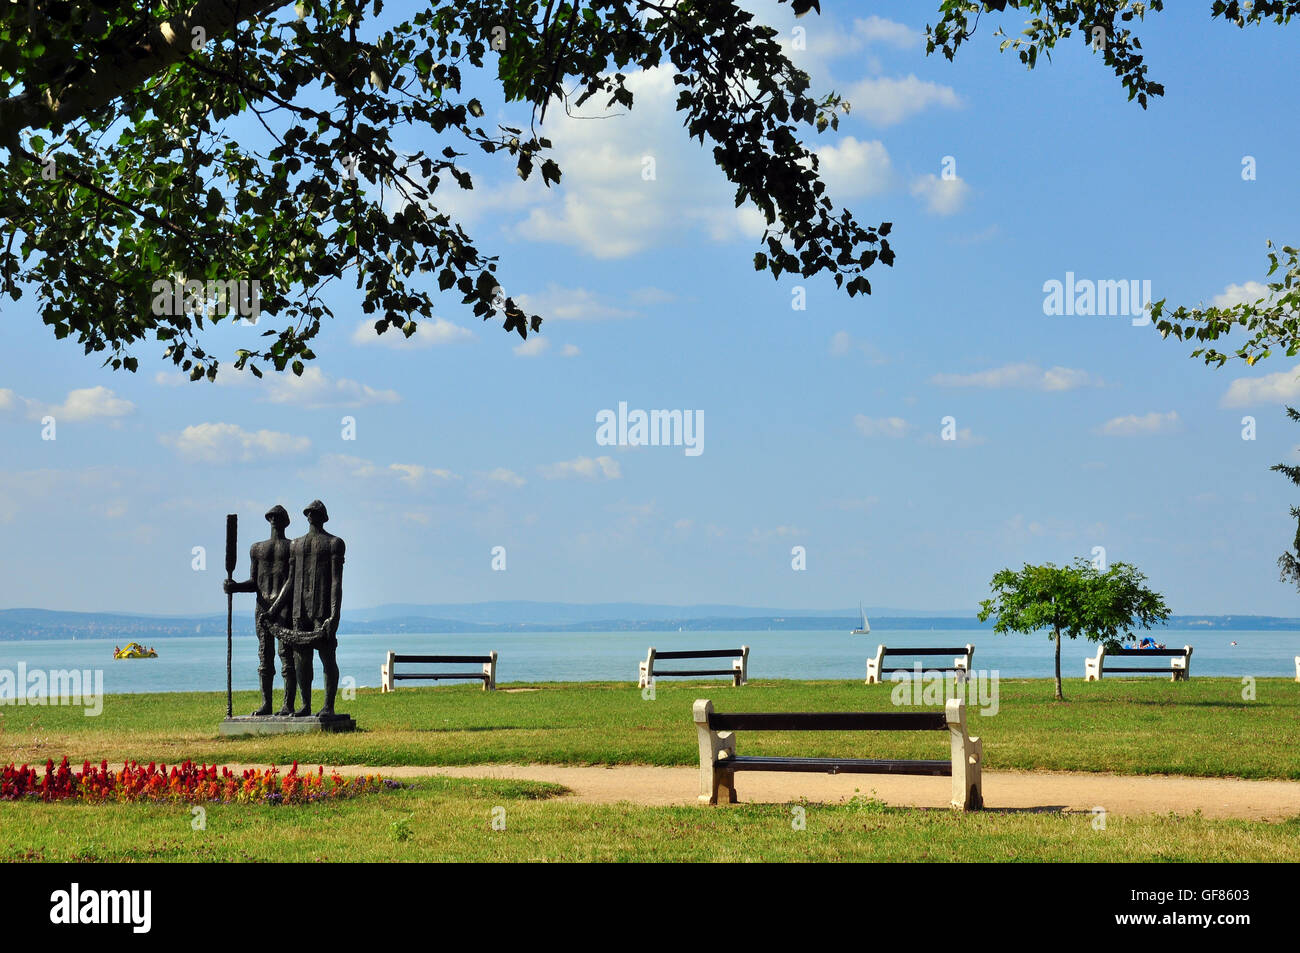 Balaton lake, Hungary Stock Photo